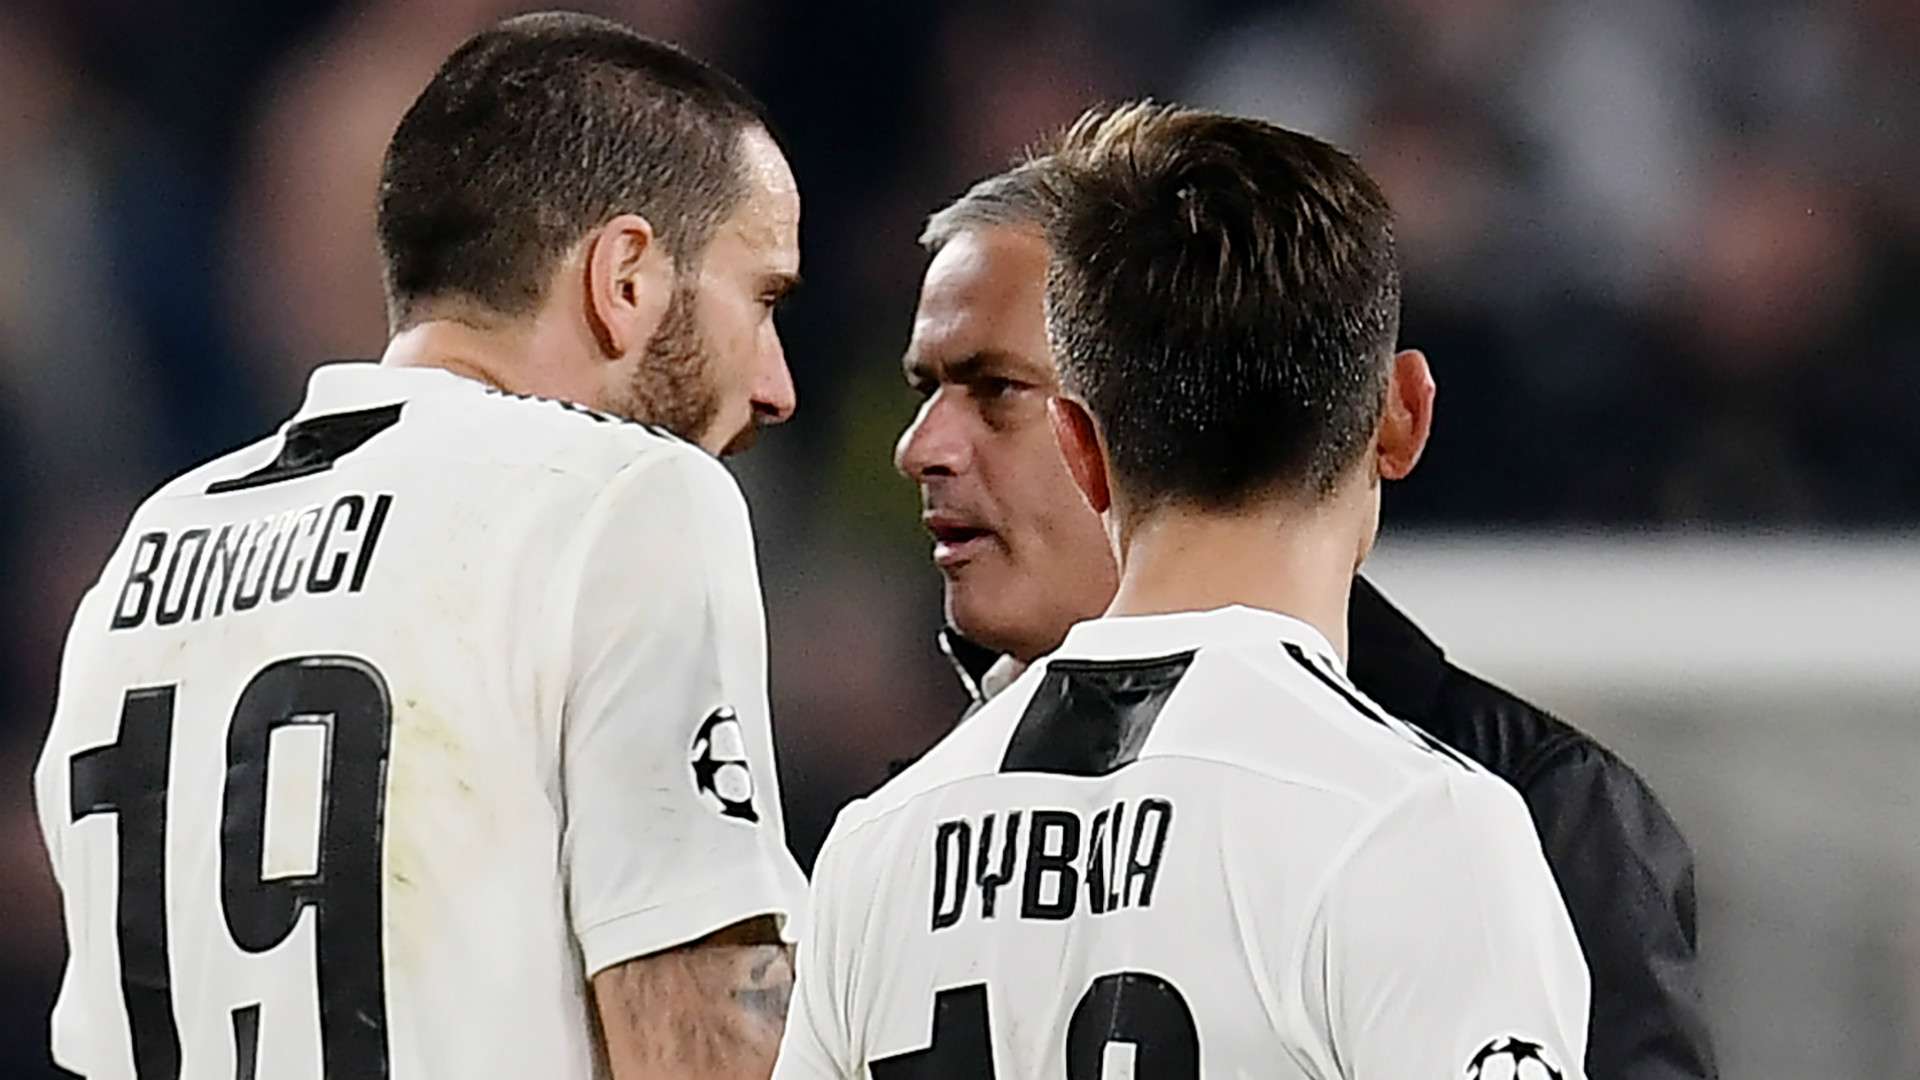 Leonardo Bonucci Jose Mourinho Juventus Manchester United 2018-19